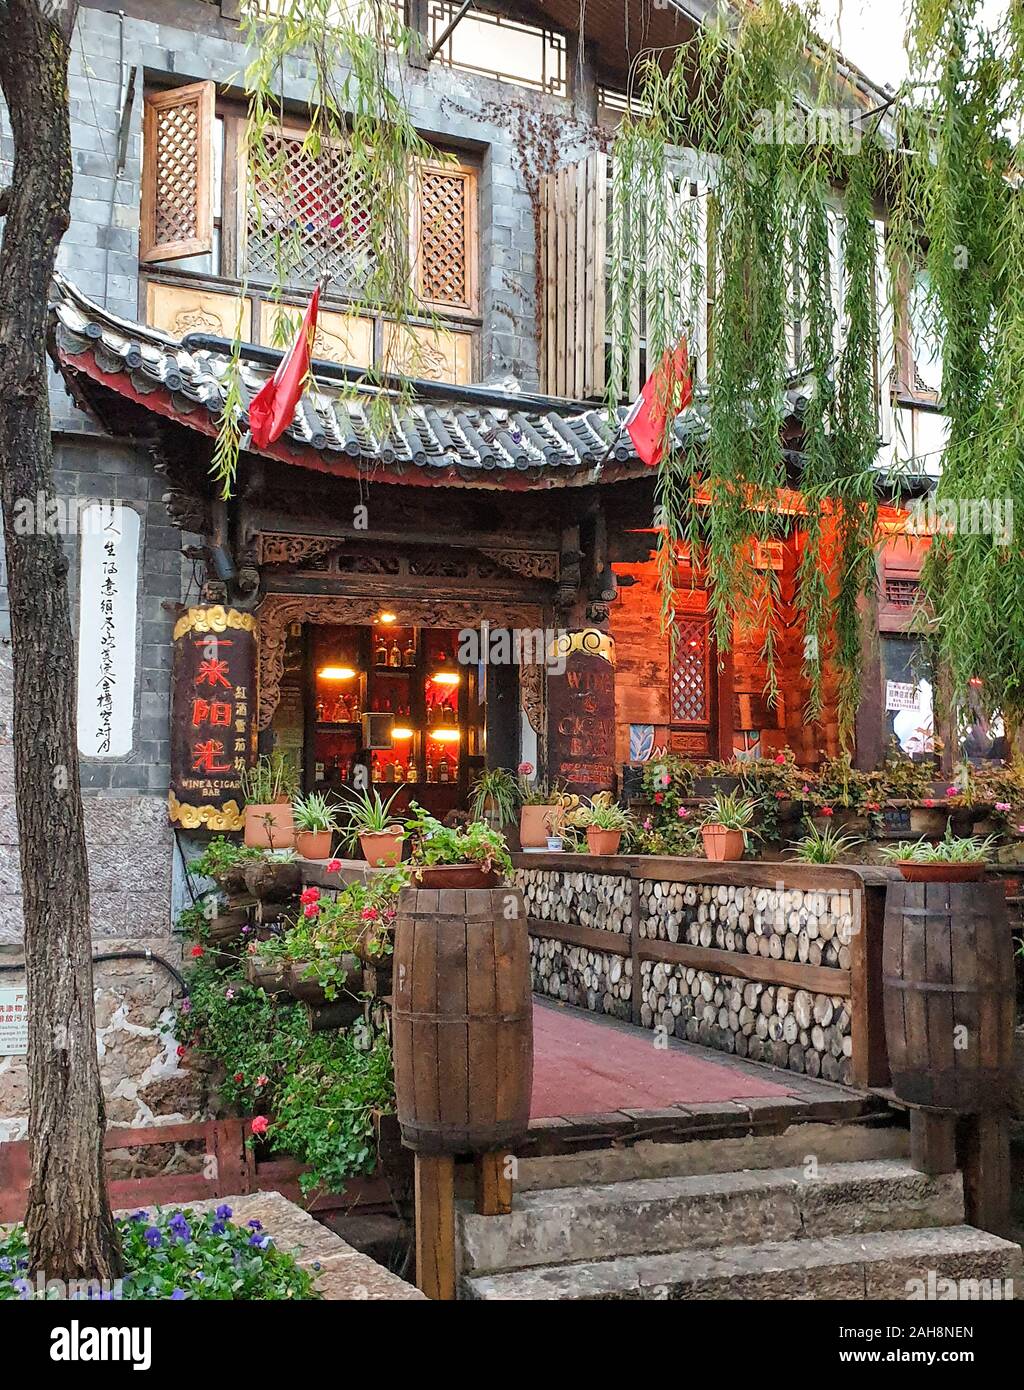 Old Town at Lijiang, Yunnan Province, China Stock Photo